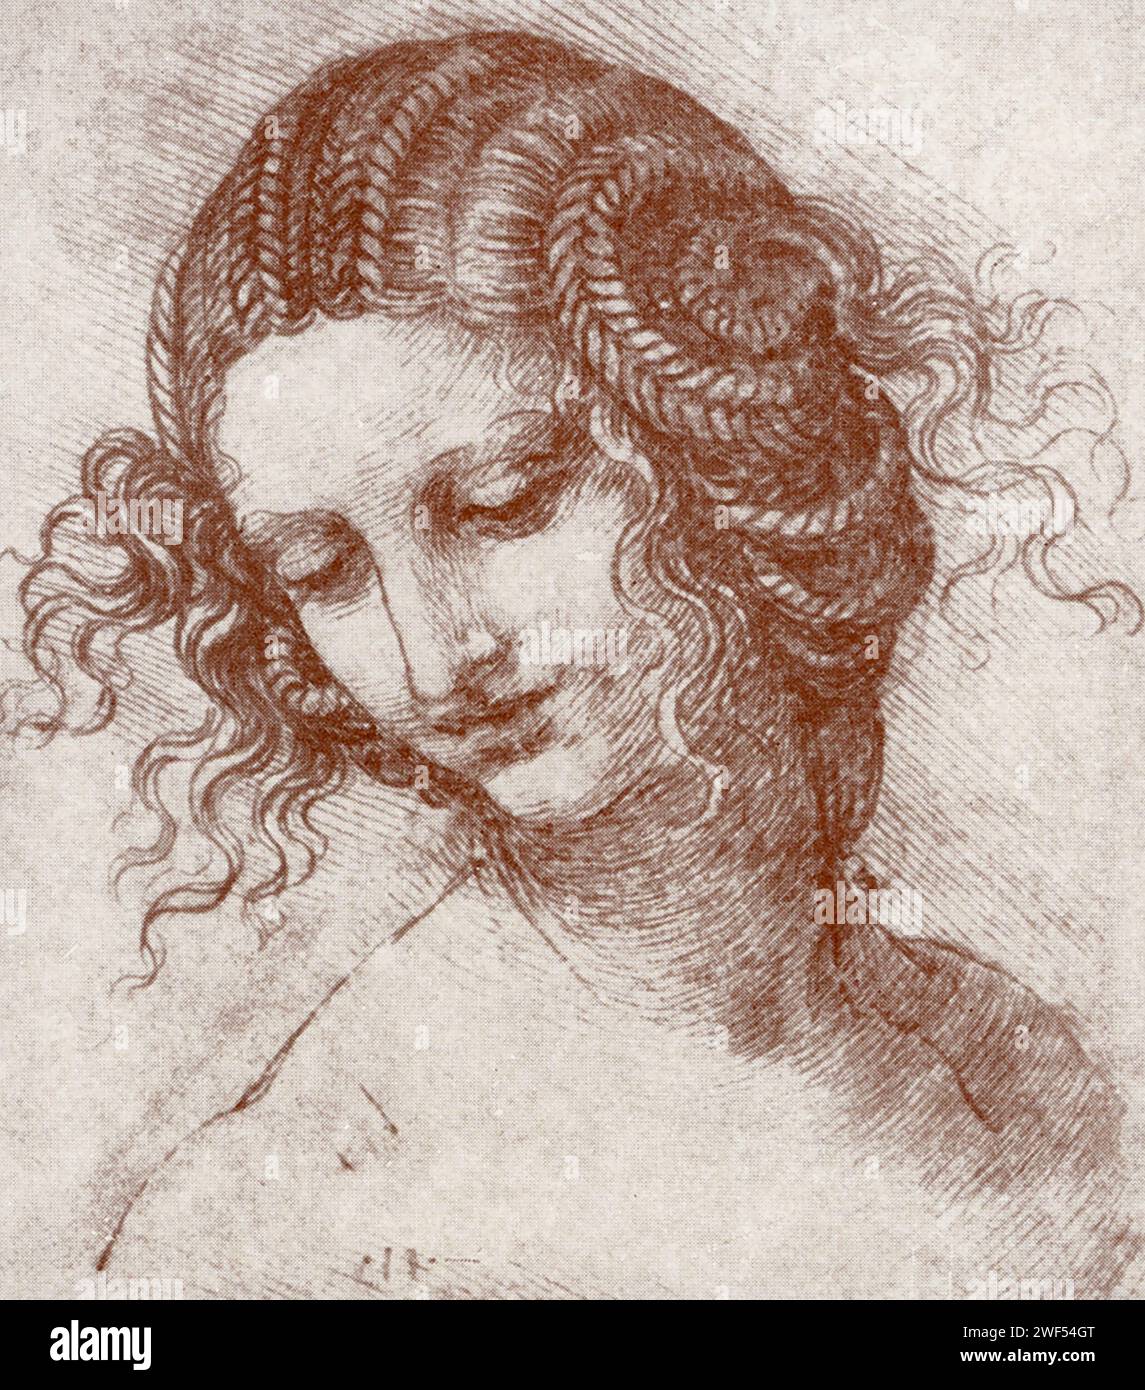 Ce dessin de Léonard de Vinci montre le style de Léonard - dessins miroirs. Ici, une jeune femme est montrée. Leonardo di ser Piero da Vinci (1452-1519) était un polymathe italien de la haute Renaissance qui était actif comme peintre, dessinateur, ingénieur, scientifique, théoricien, sculpteur et architecte. Banque D'Images